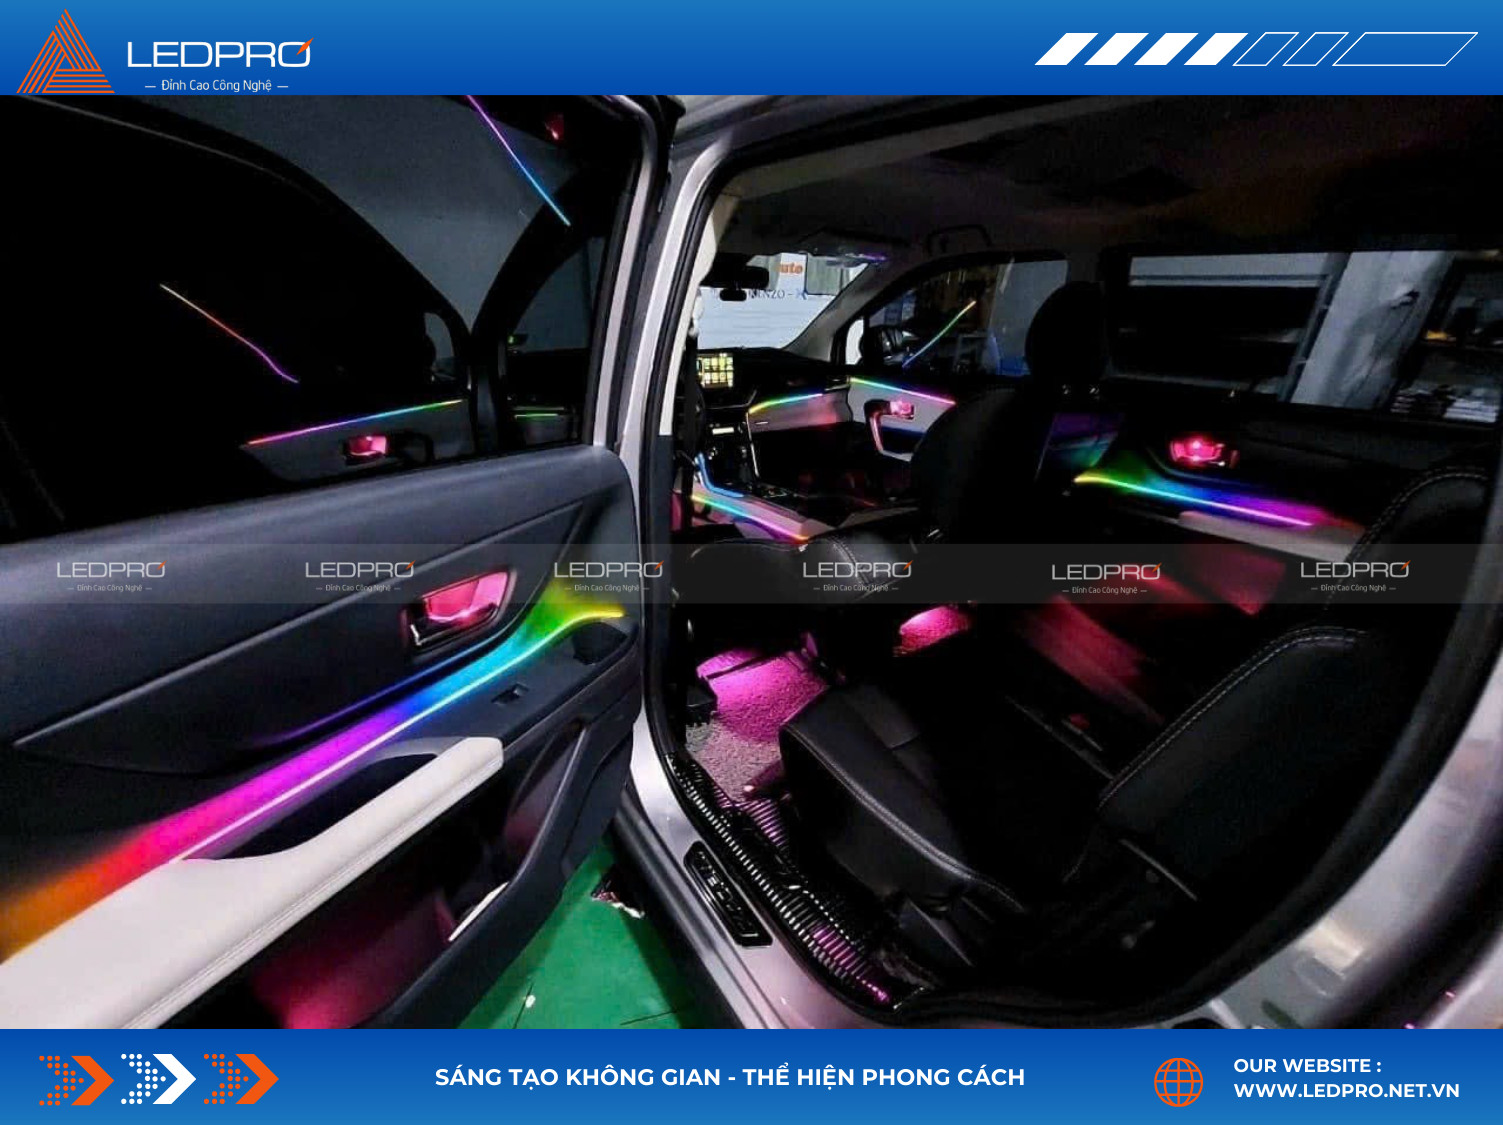 LED viền nội thất ô tô